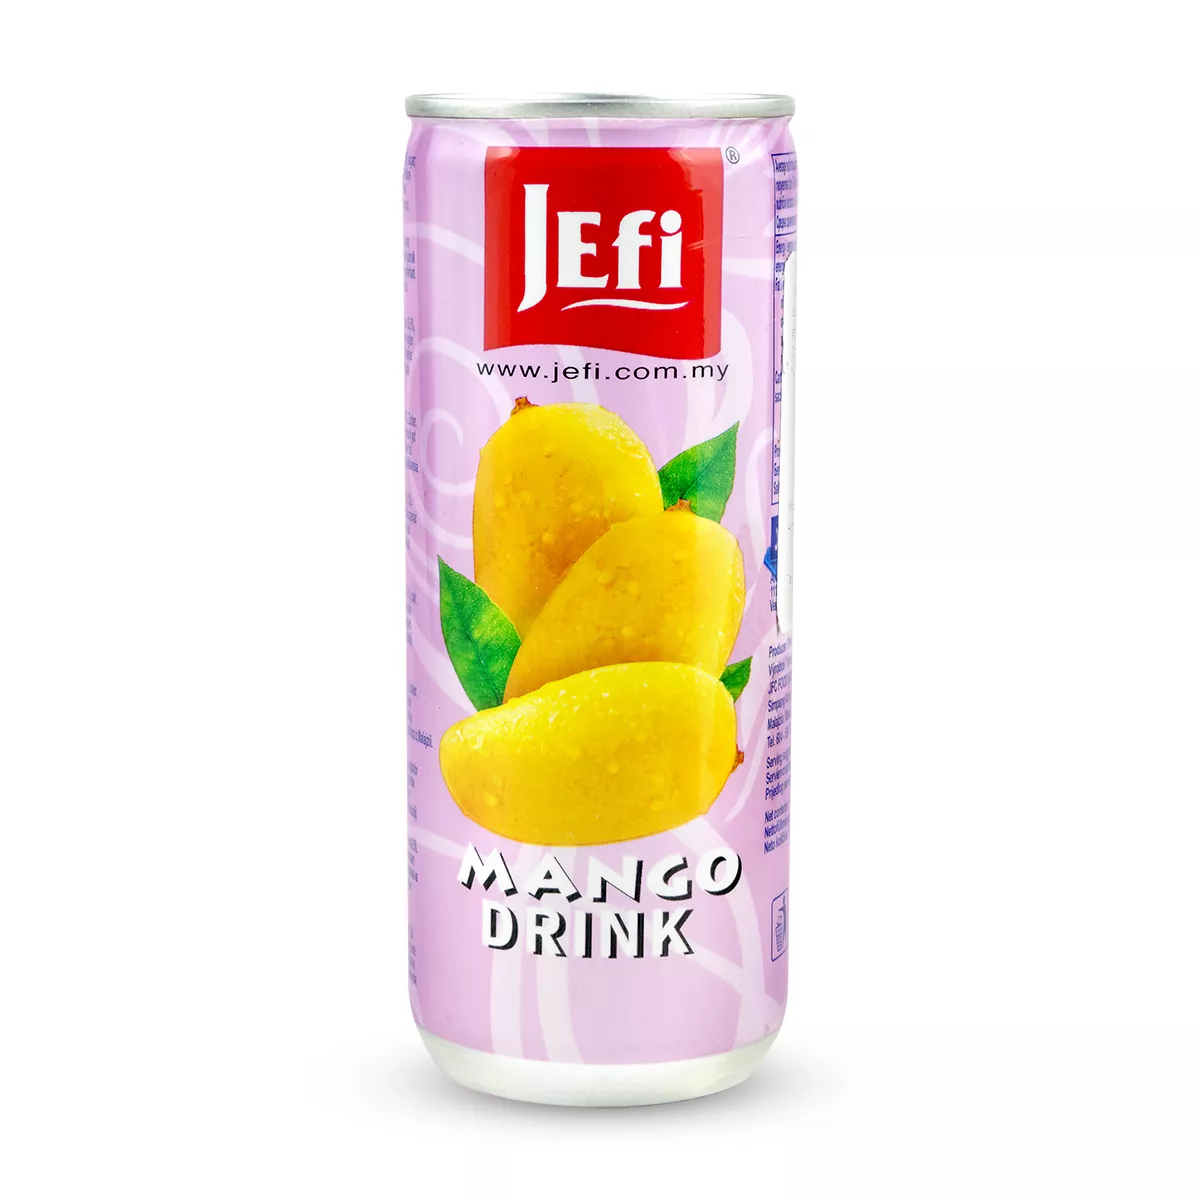 Suc de mango JEFI 250ml, [],asianfood.ro